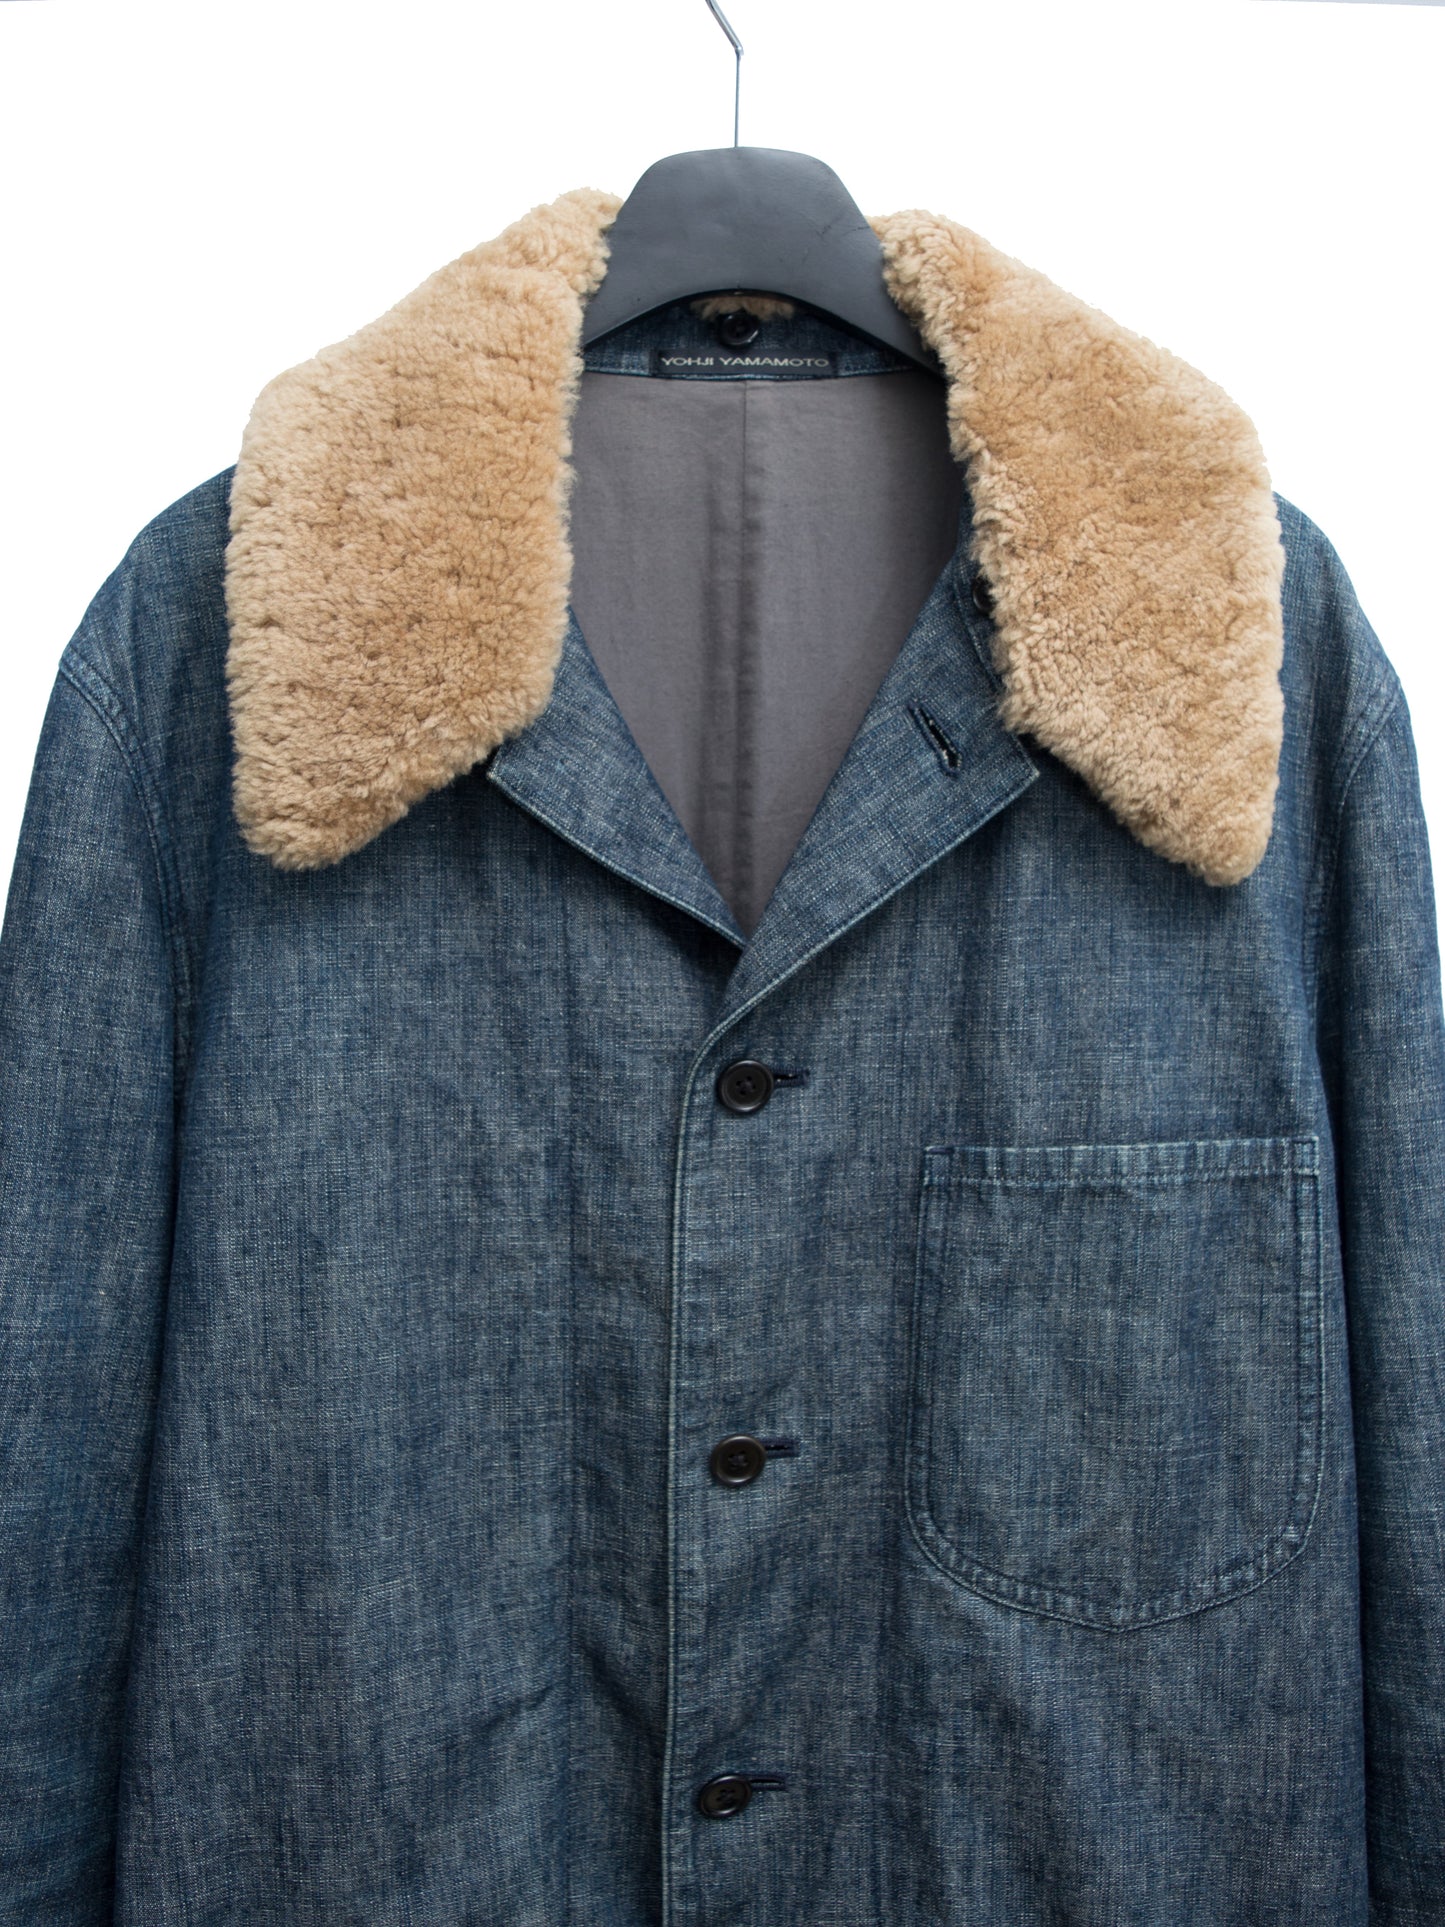 mouton coverall jacket indigo ∙ cotton linen ∙ medium